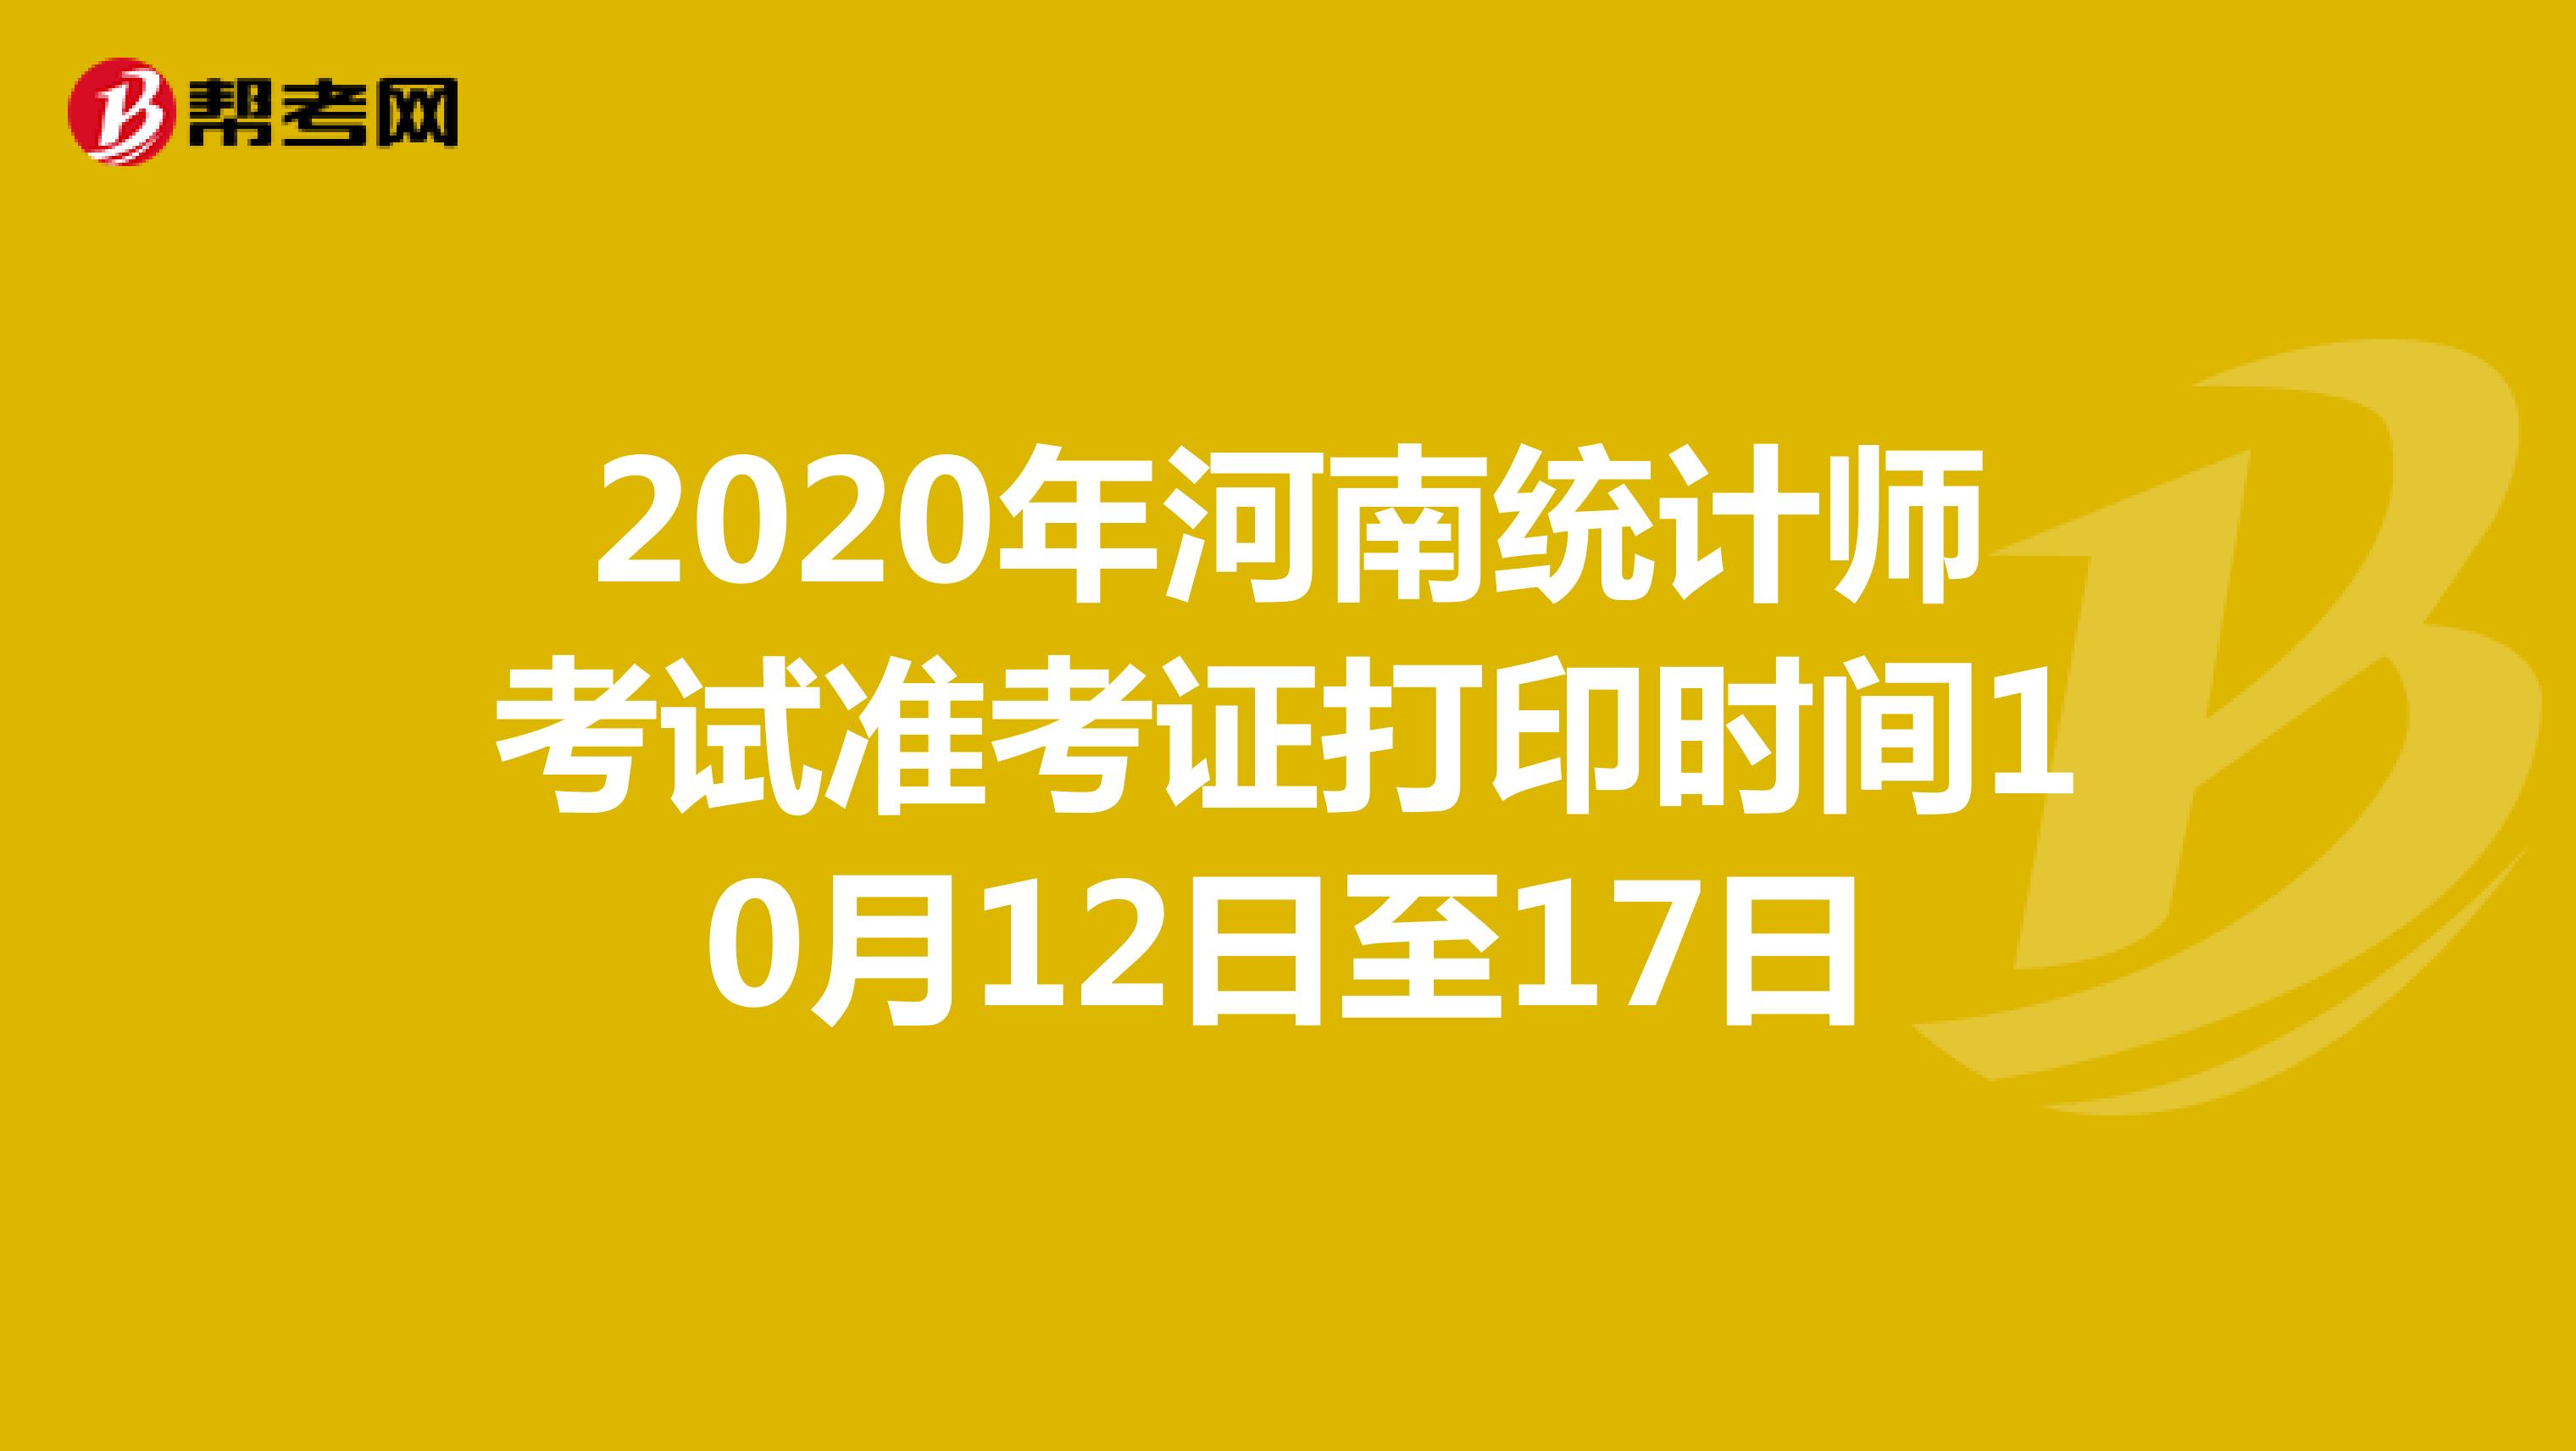 2020年河南统计师考试准考证打印时间10月12日至17日